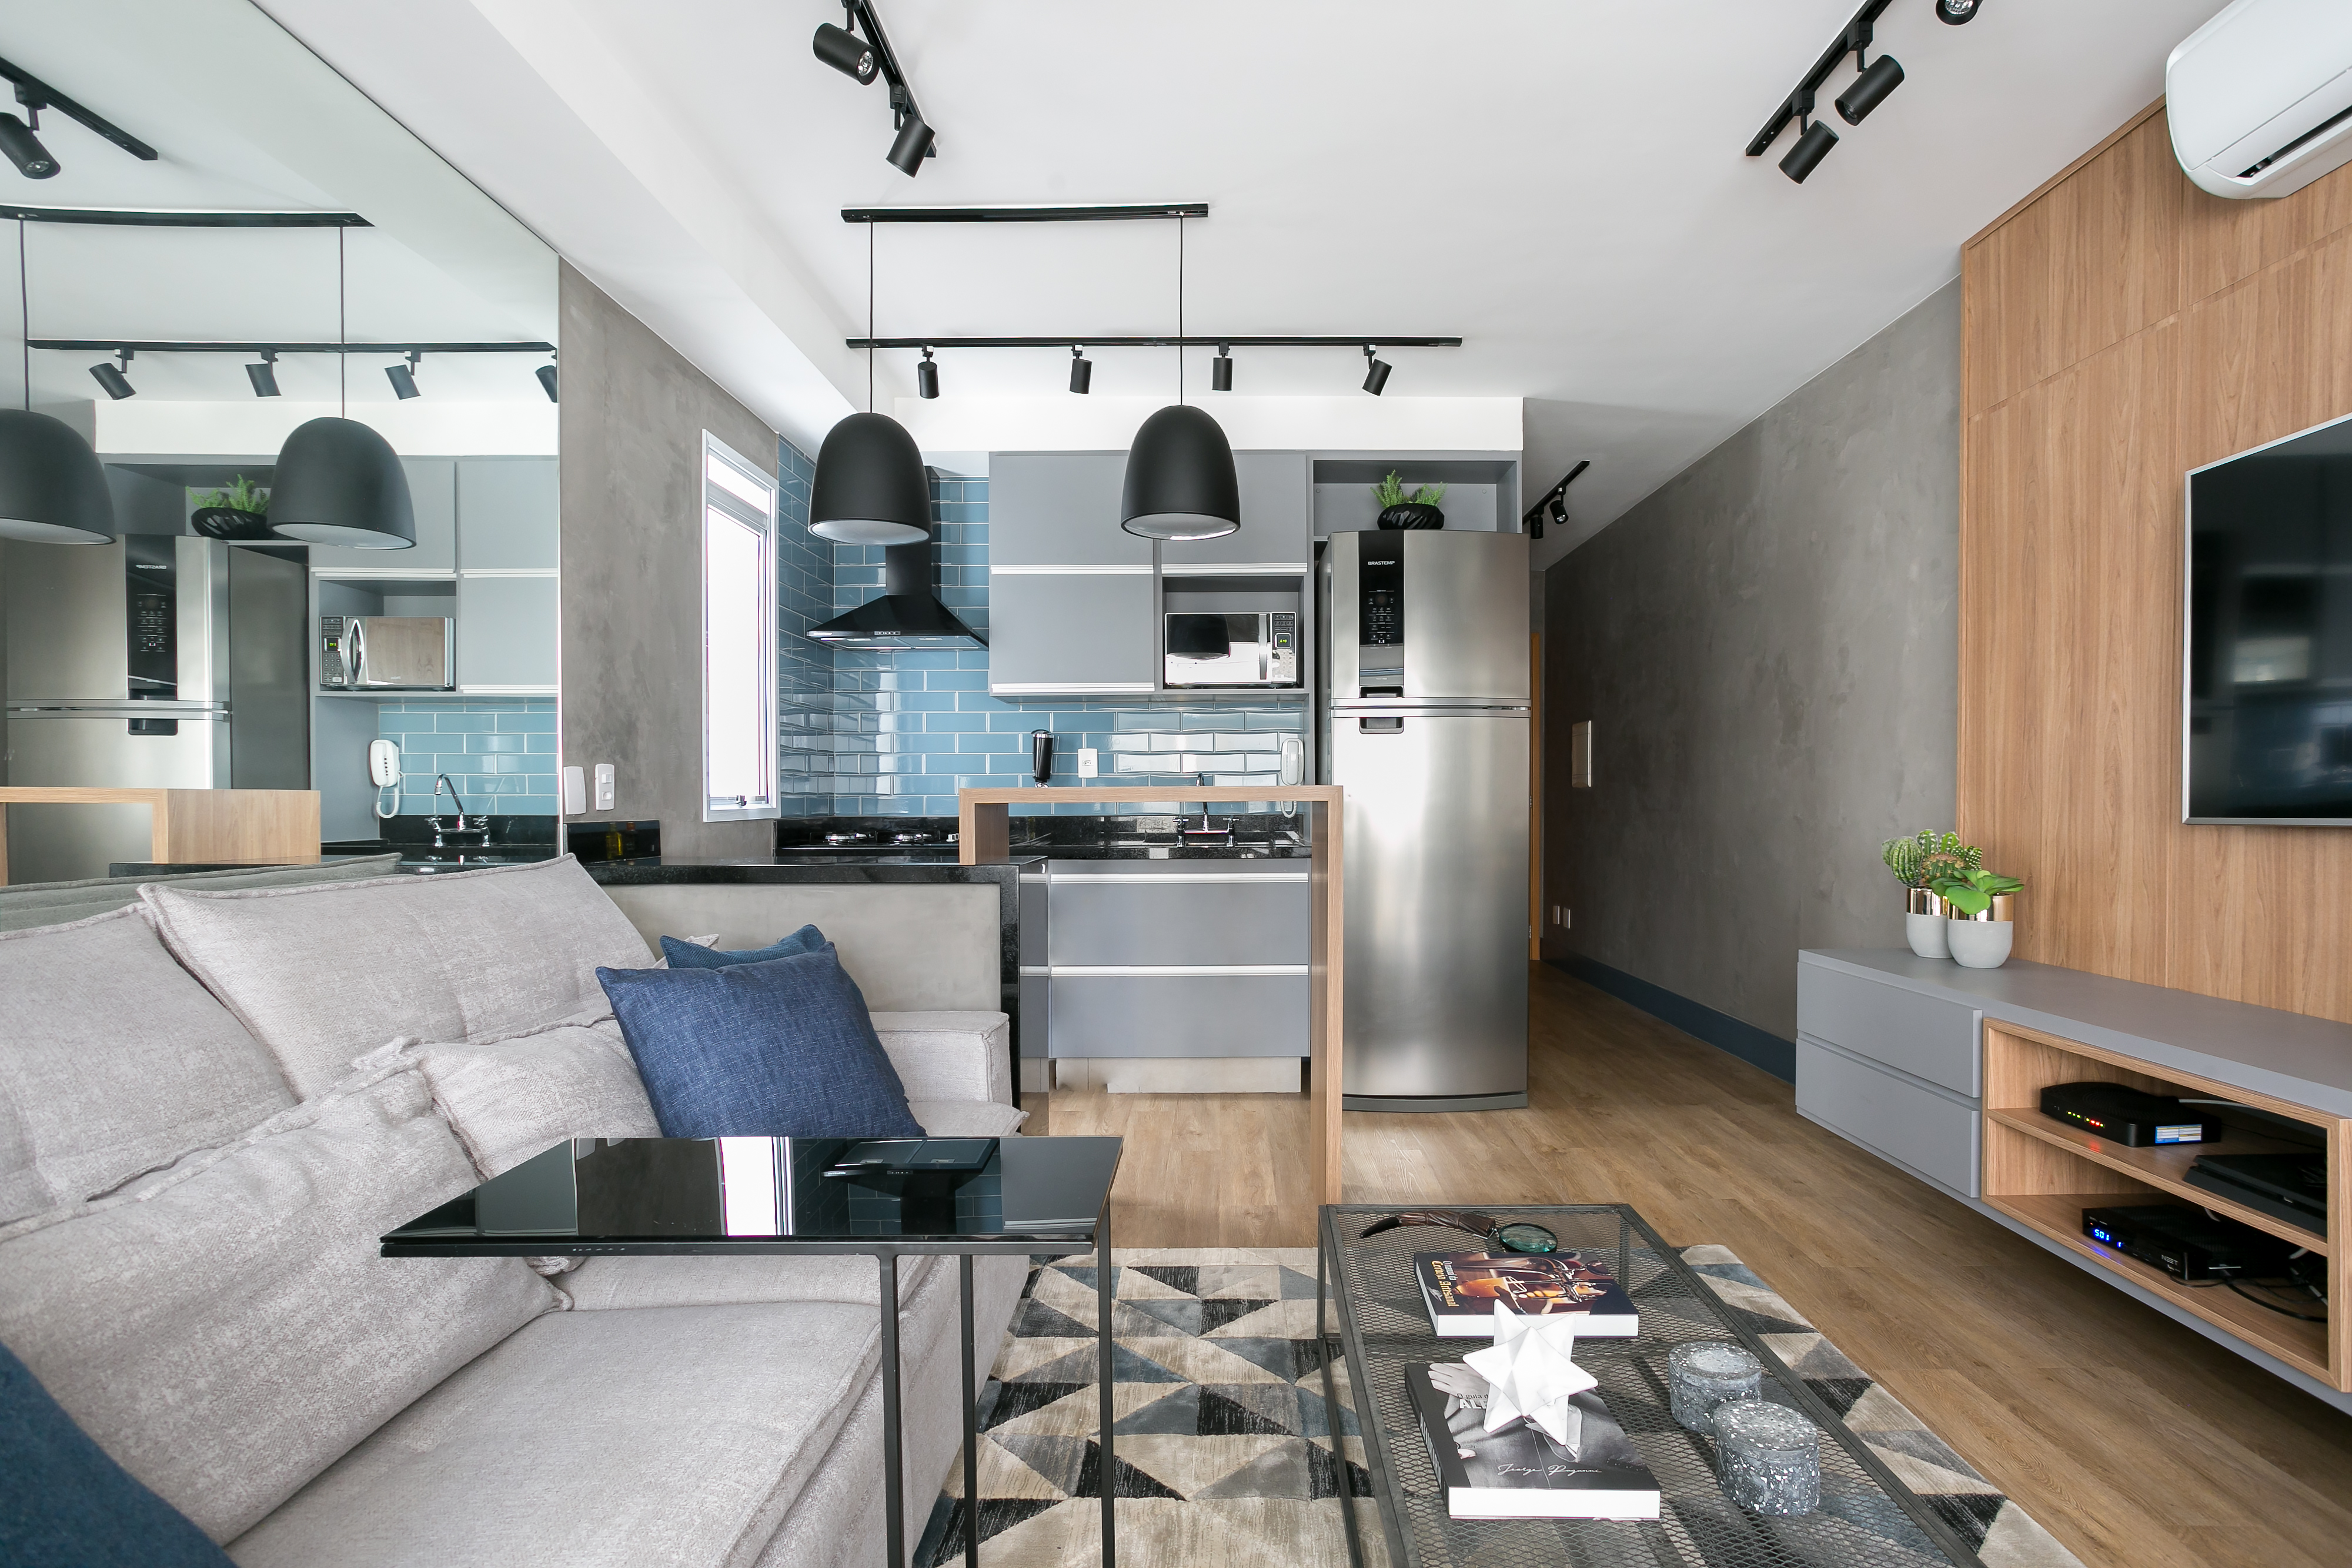  Małe mieszkanie o powierzchni 43 m² w industrialnym stylu